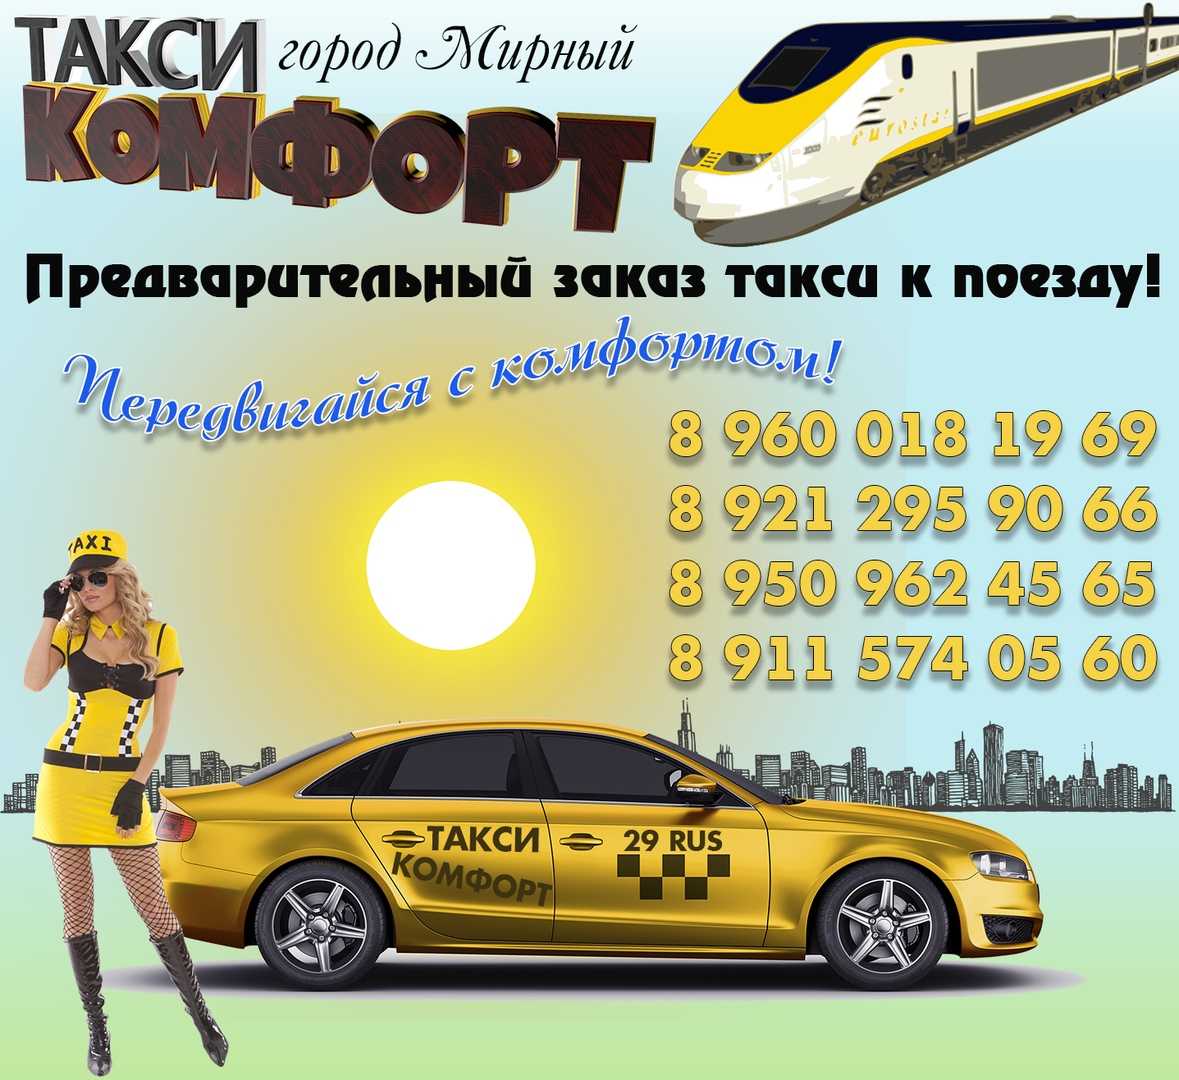 Номер телефона такси в ростове на дону. Такси комфорт. Такси комфорт Ростов. Такси комфорт Волгоград. Номер такси комфорт.